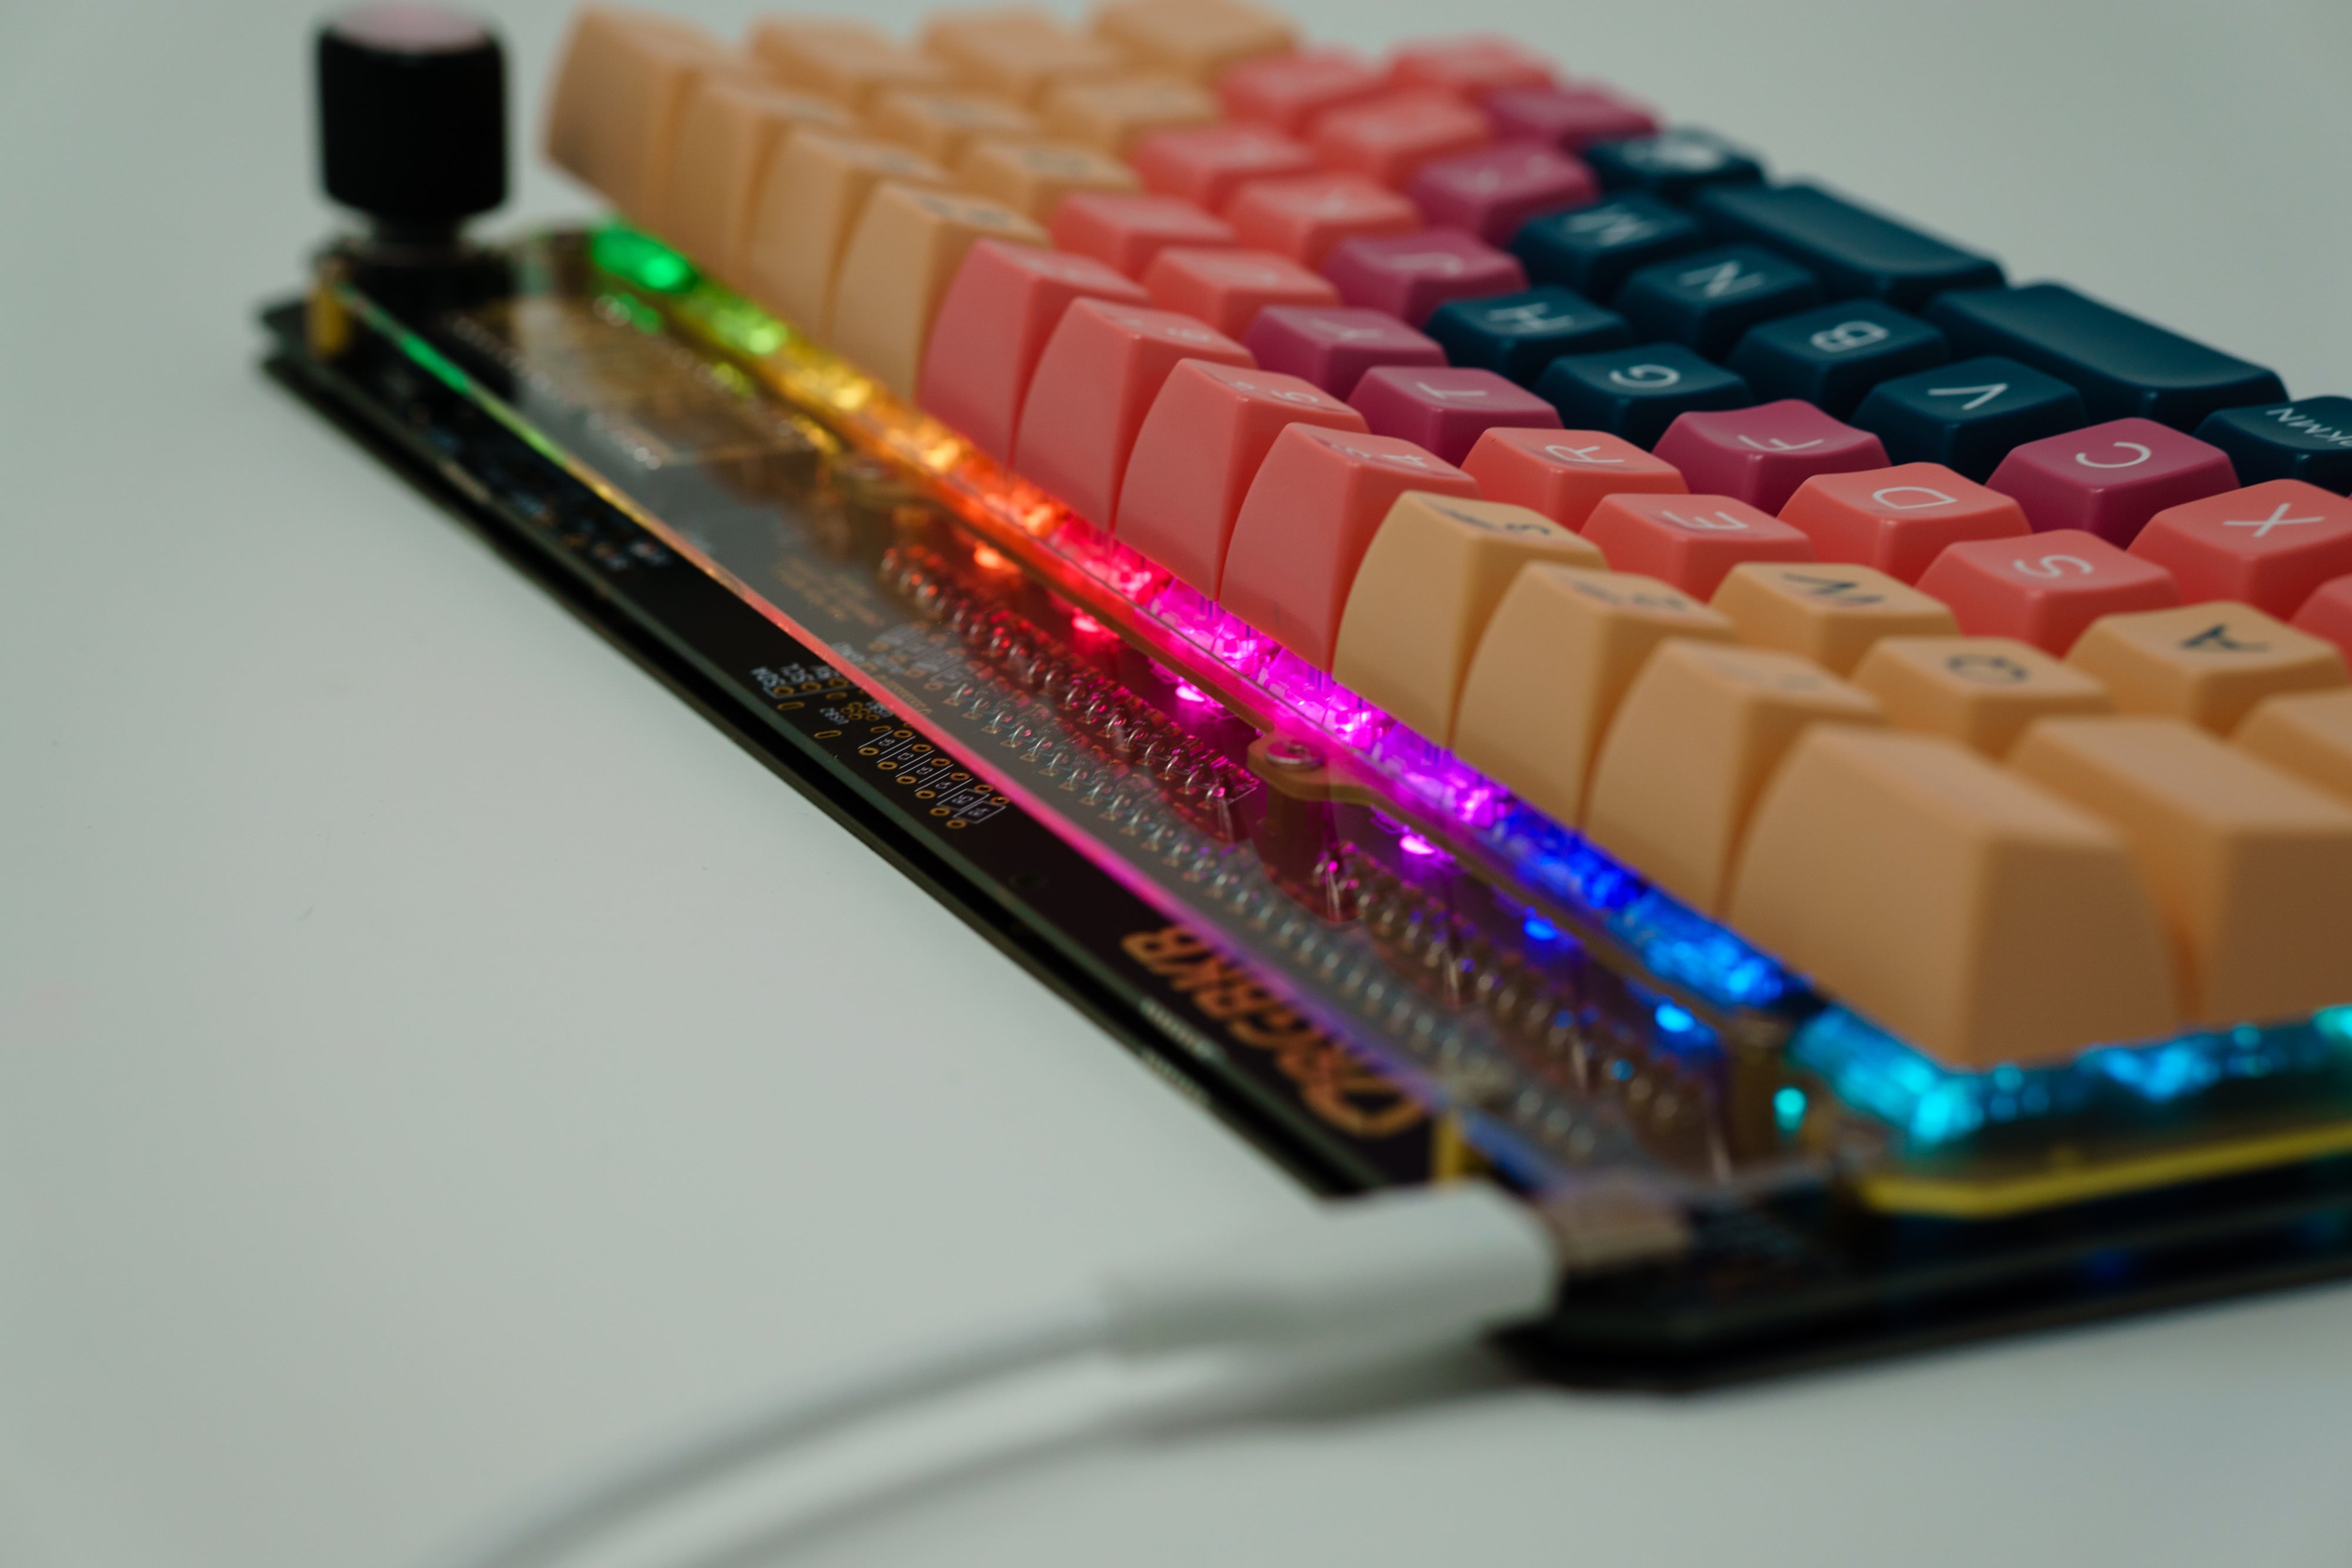 Pan DIY Keyboard PCB Kit